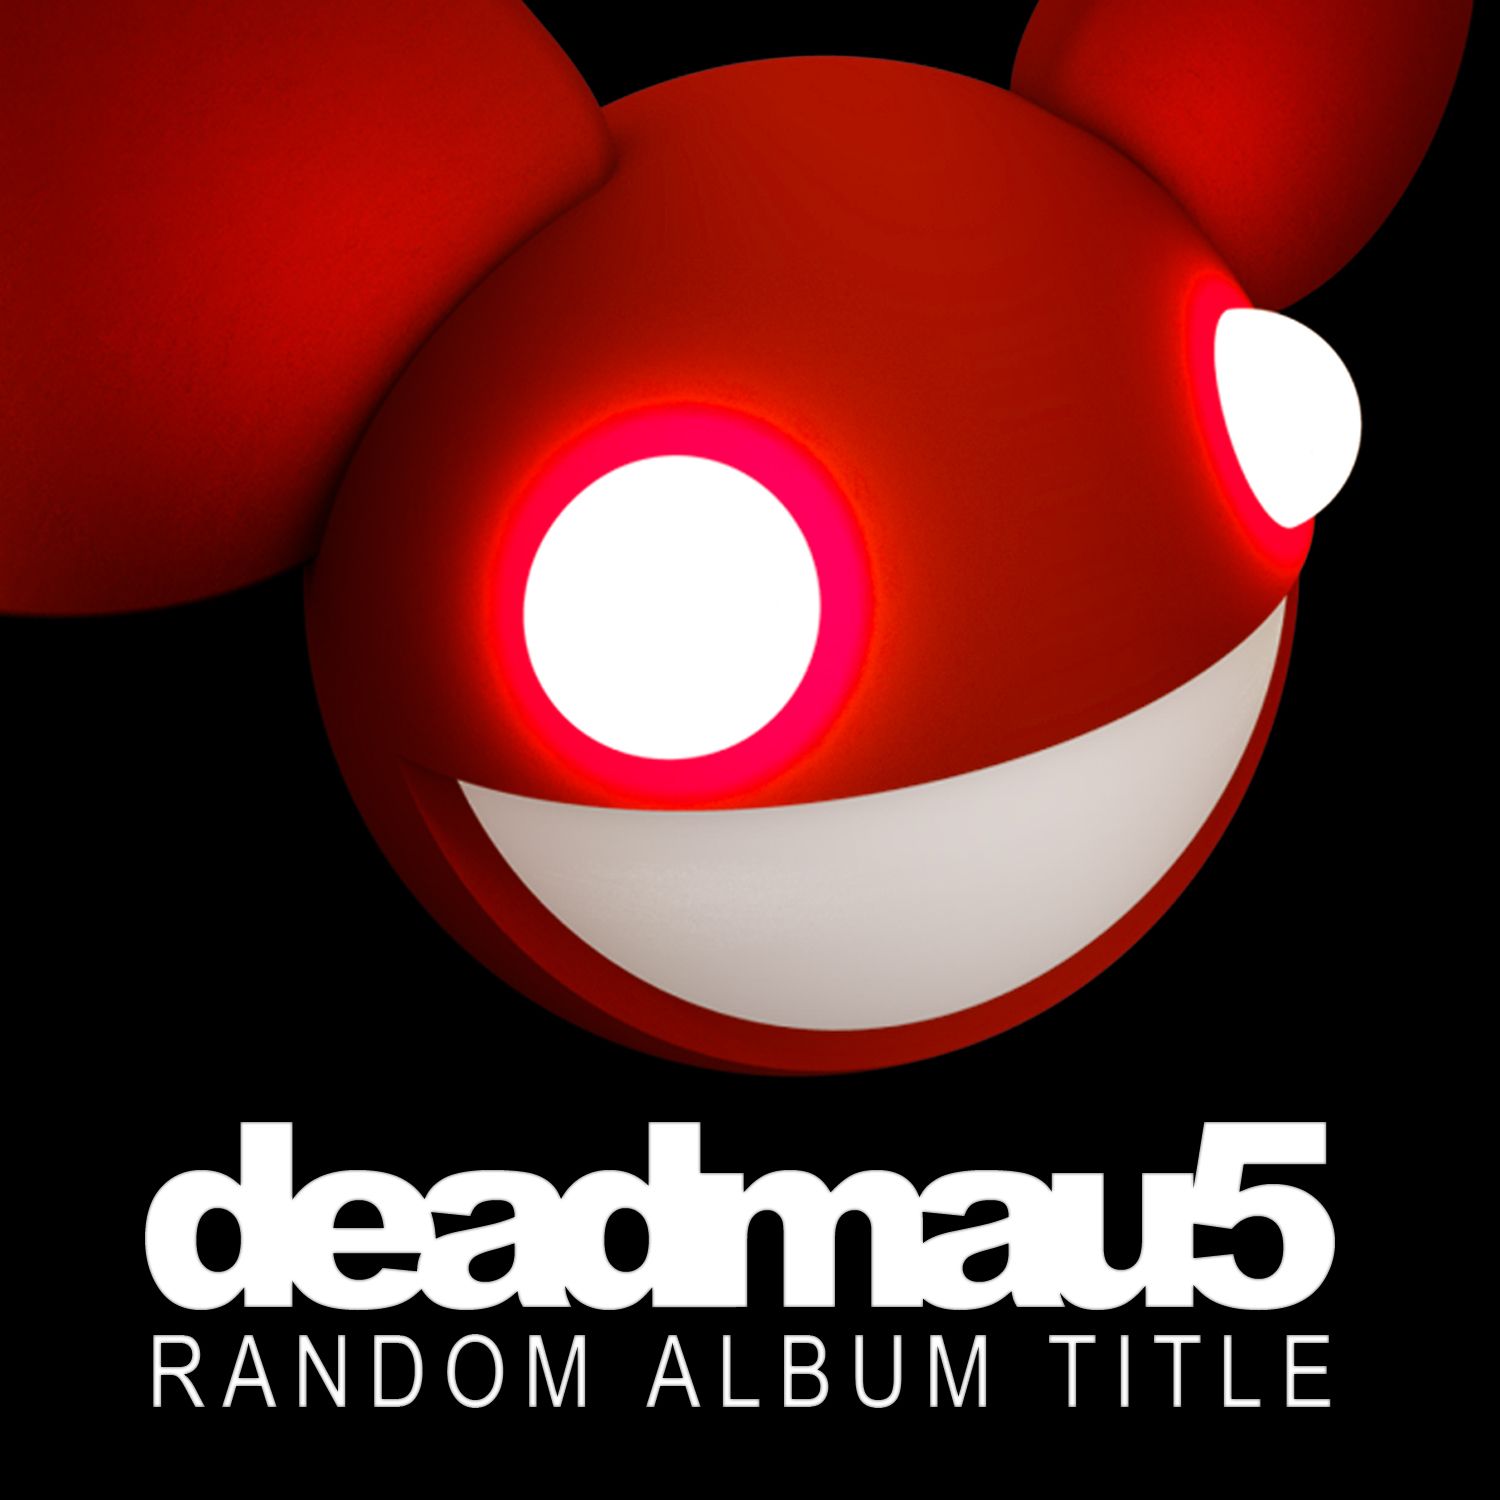 Deadmau5 Random Album Title Album Review Steemit